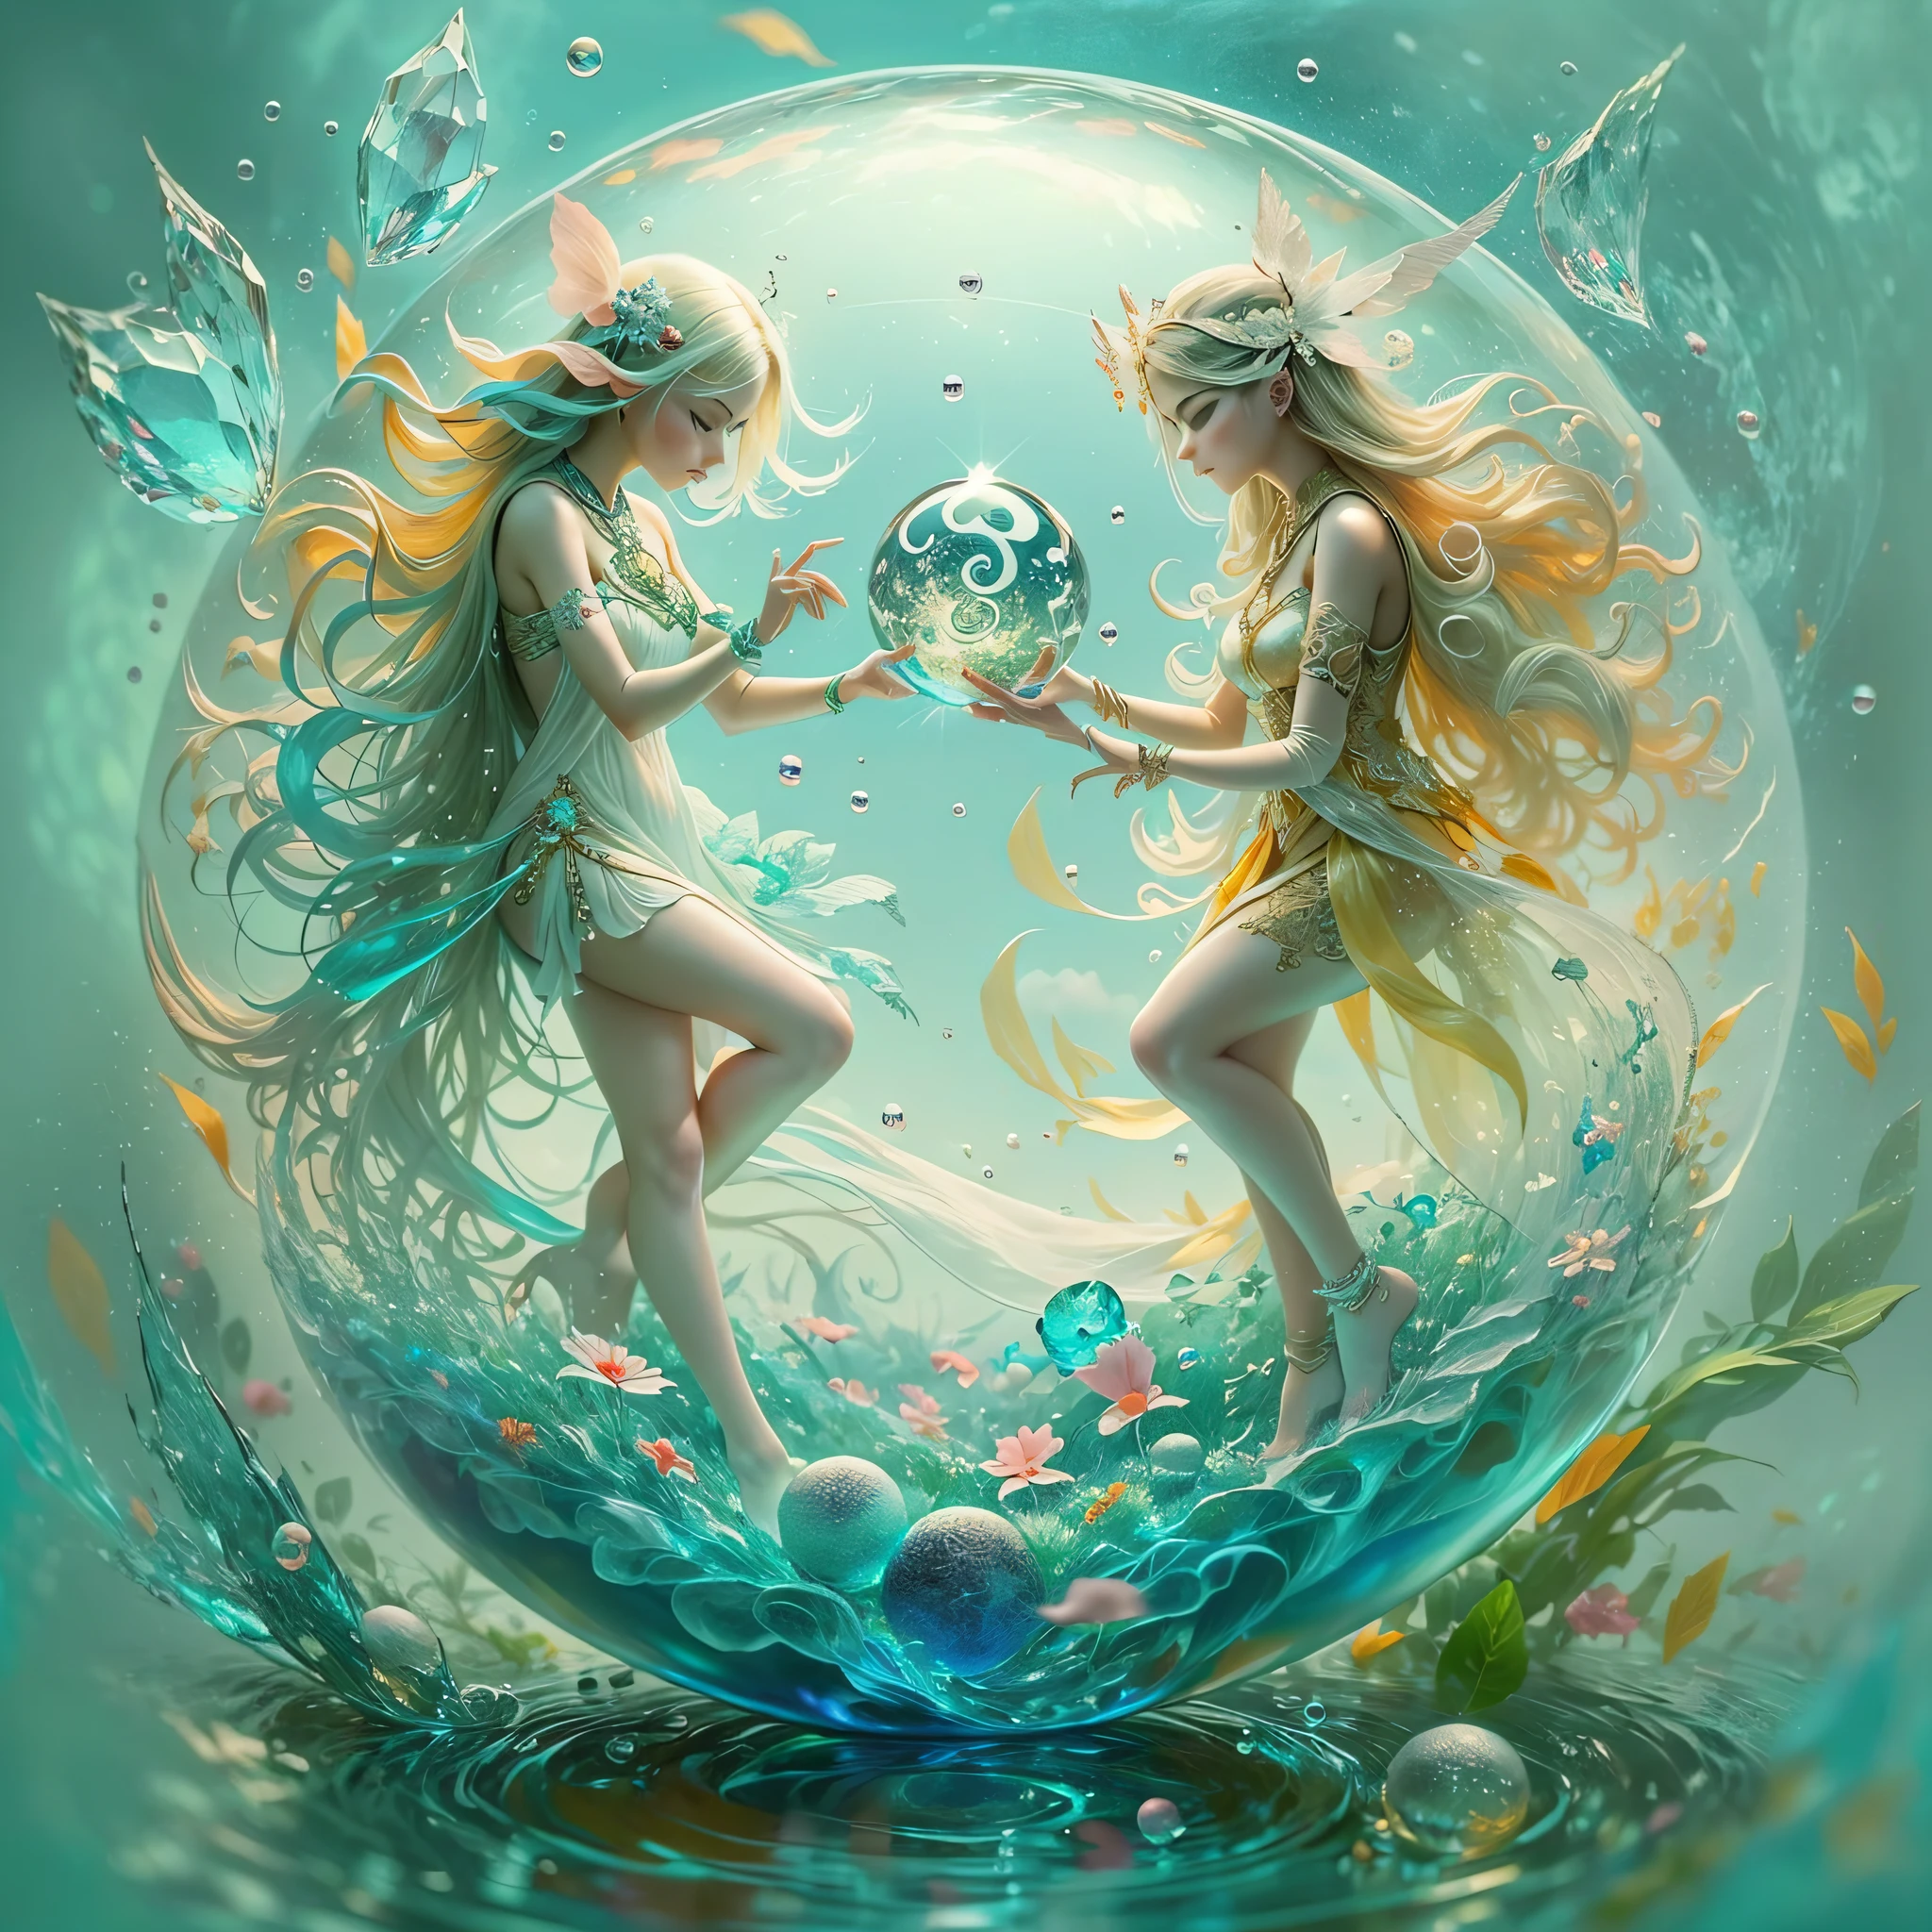 Sea Art 的 AI 生成的画作是一幅迷人的水晶球图像. 上面雕刻着两尊美丽的仙女雕像。. 仙女雕塑被配置在水晶球内, 代表阴和阳. 在这件艺术作品中, 创造力与人工智能相结合，创造出神奇而又象征性的视觉表现. 画中描绘的两位仙女是娇柔而又活泼的生物. 它们有半透明的, 发光的翅膀, 她们的衣服装饰着复杂而明亮的细节;. 其中一位仙女化身为“阴”, 外观光滑宁静, 而另一个则是阳的化身, 他的生动活泼. 仙女们被安置在一个水晶球内, 散发出空灵的光辉. 水晶球象征着阴阳对立力量之间的和谐与统一. 通过这种表示, 这幅画提醒我们生活中平衡和互补的重要性. 画作的配色柔和而迷人, 蓝色和粉色的色调, 既代表柔软又活泼. 这幅画充满了微小的细节, 给仙女和水晶球带来生命, 营造一种神奇而神秘的感觉. 这张图片是两个美丽的仙女被安置在水晶球内, 代表阴和阳, 由 Sea Art 的 AI 生成, 邀请我们反思生活中存在的二元性. 它激励我们在对立的力量之间寻求平衡，并在我们内心找到和谐. 这幅图激励我们拥抱自己个性的方方面面, 寻找对立之间的和谐，赞美使我们成为独特人类的二元性之美. 这提醒我们, 就像阴阳仙子一样, 我们每个人内心都拥有独特的光芒，, 当我们尊重这种二元性时, 我们可以成为更加完整和充实的人.